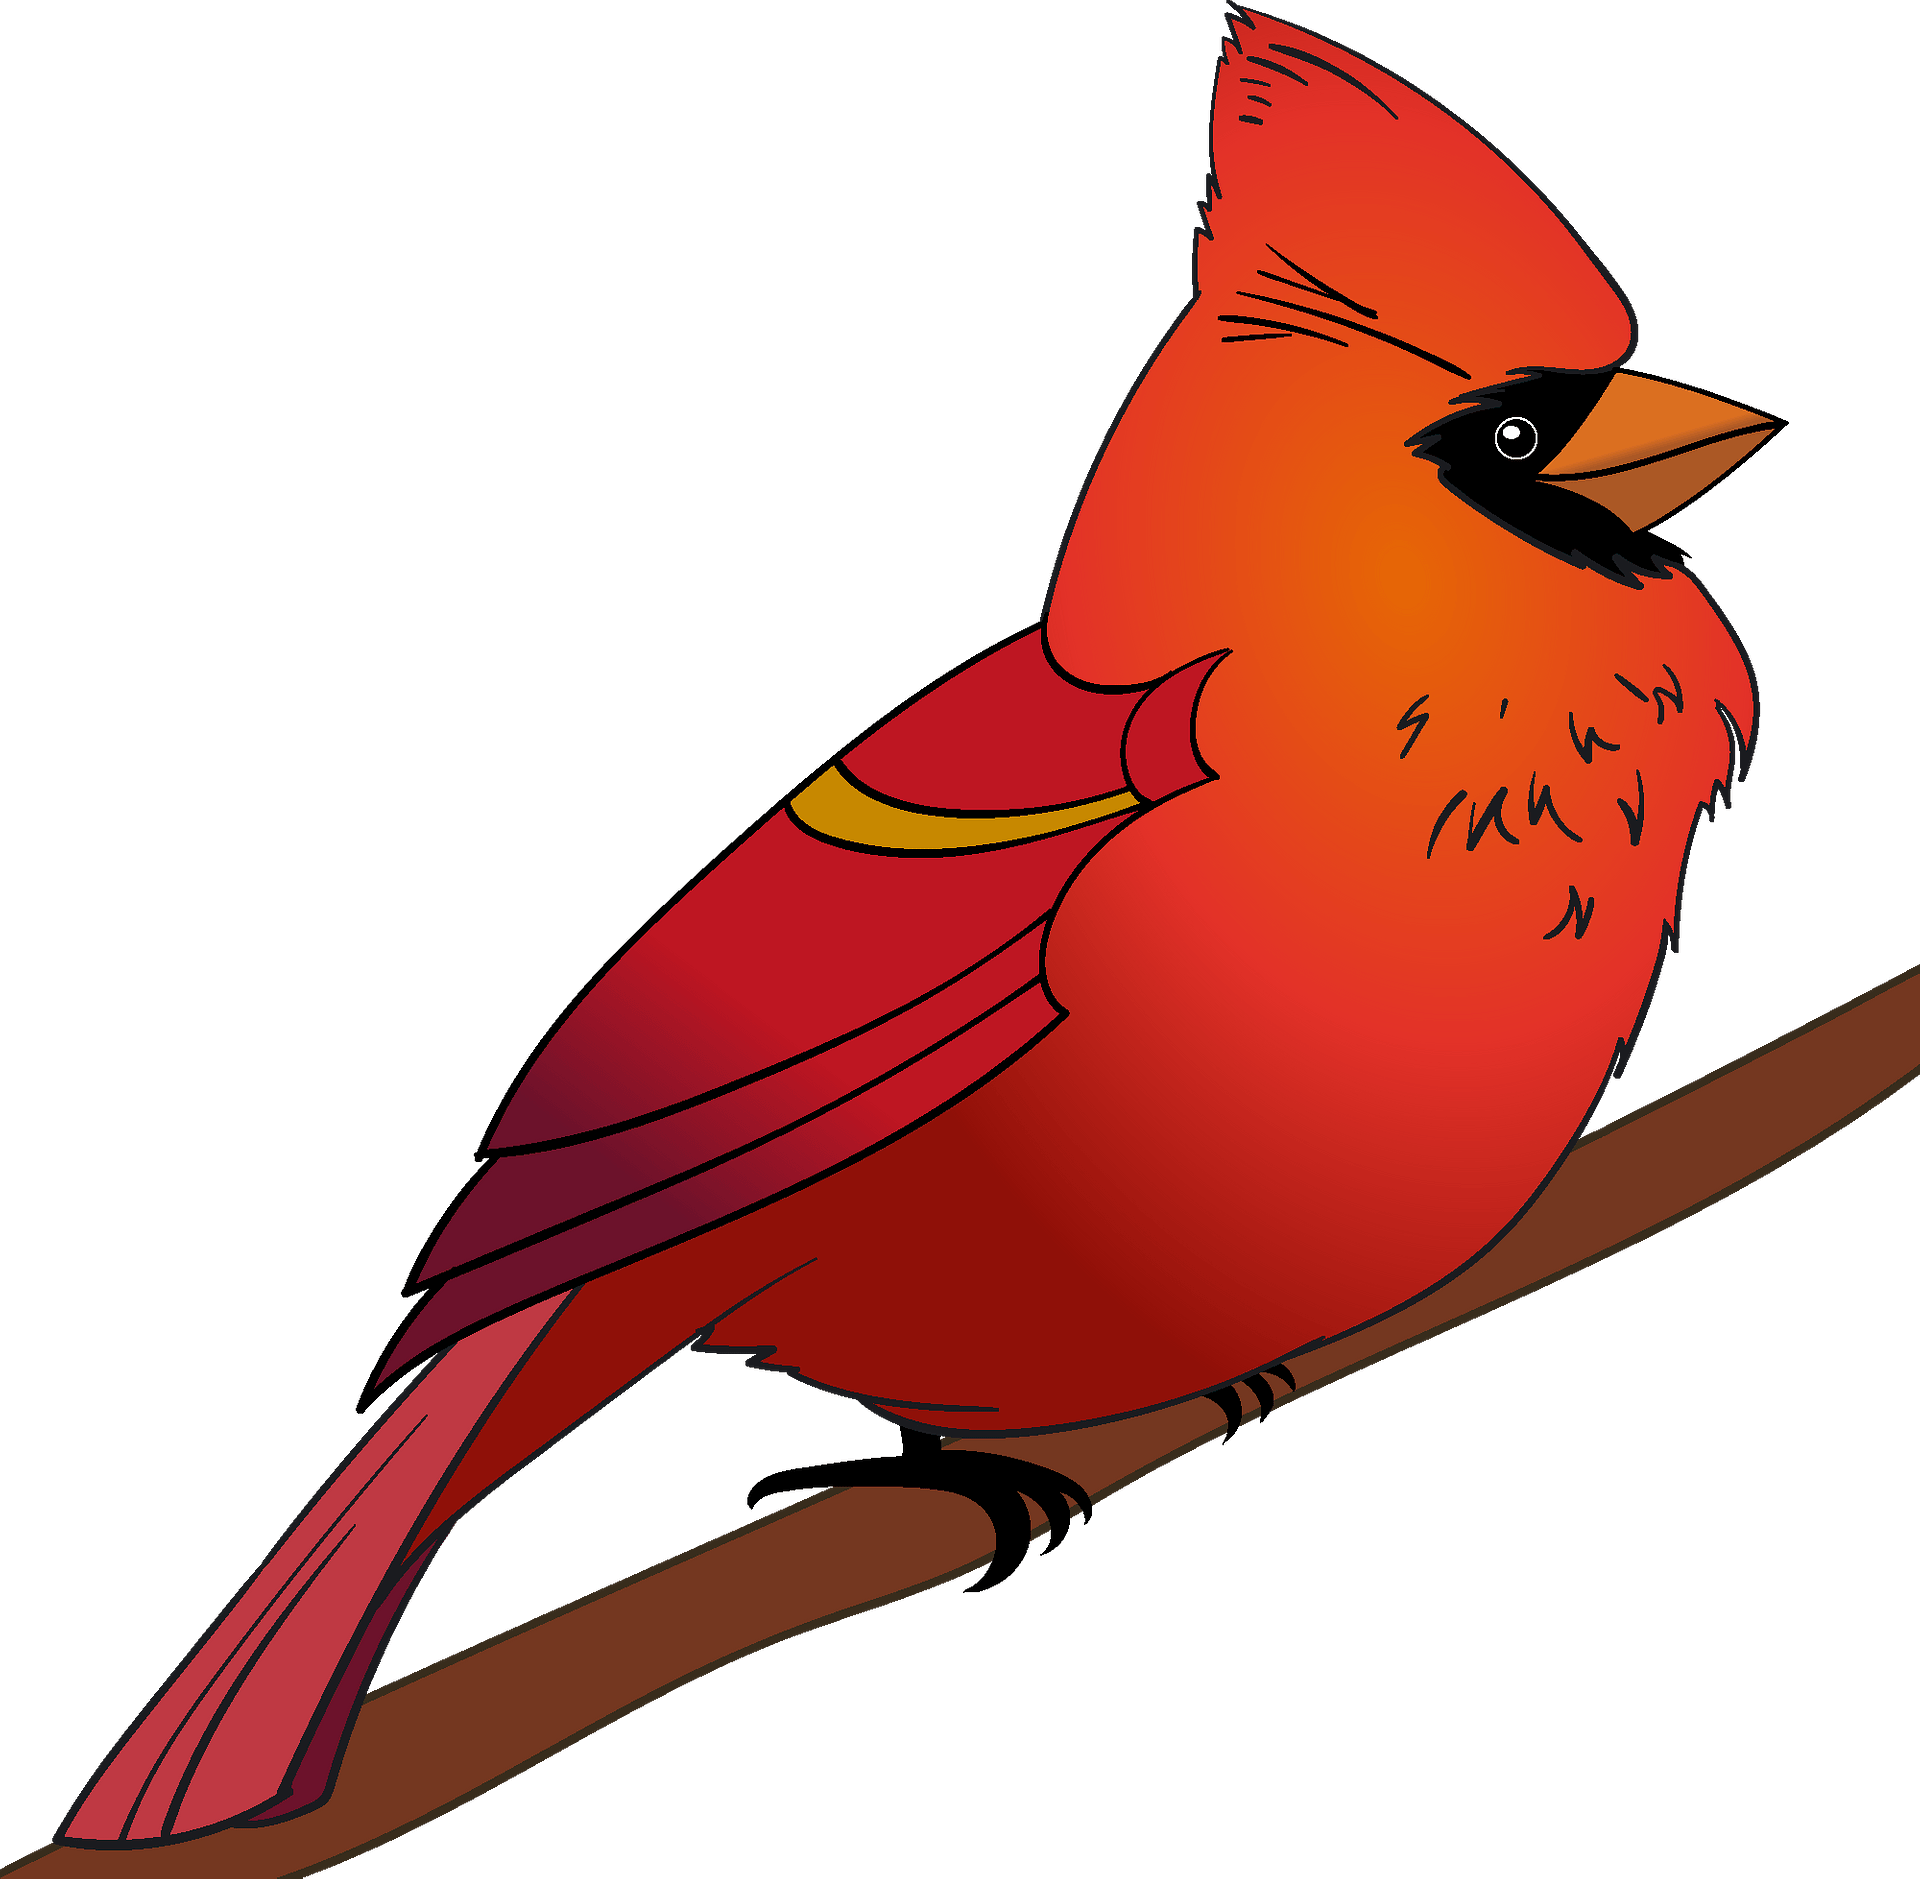 red cardinal playing baseball Royalty Free Vector Clip Art